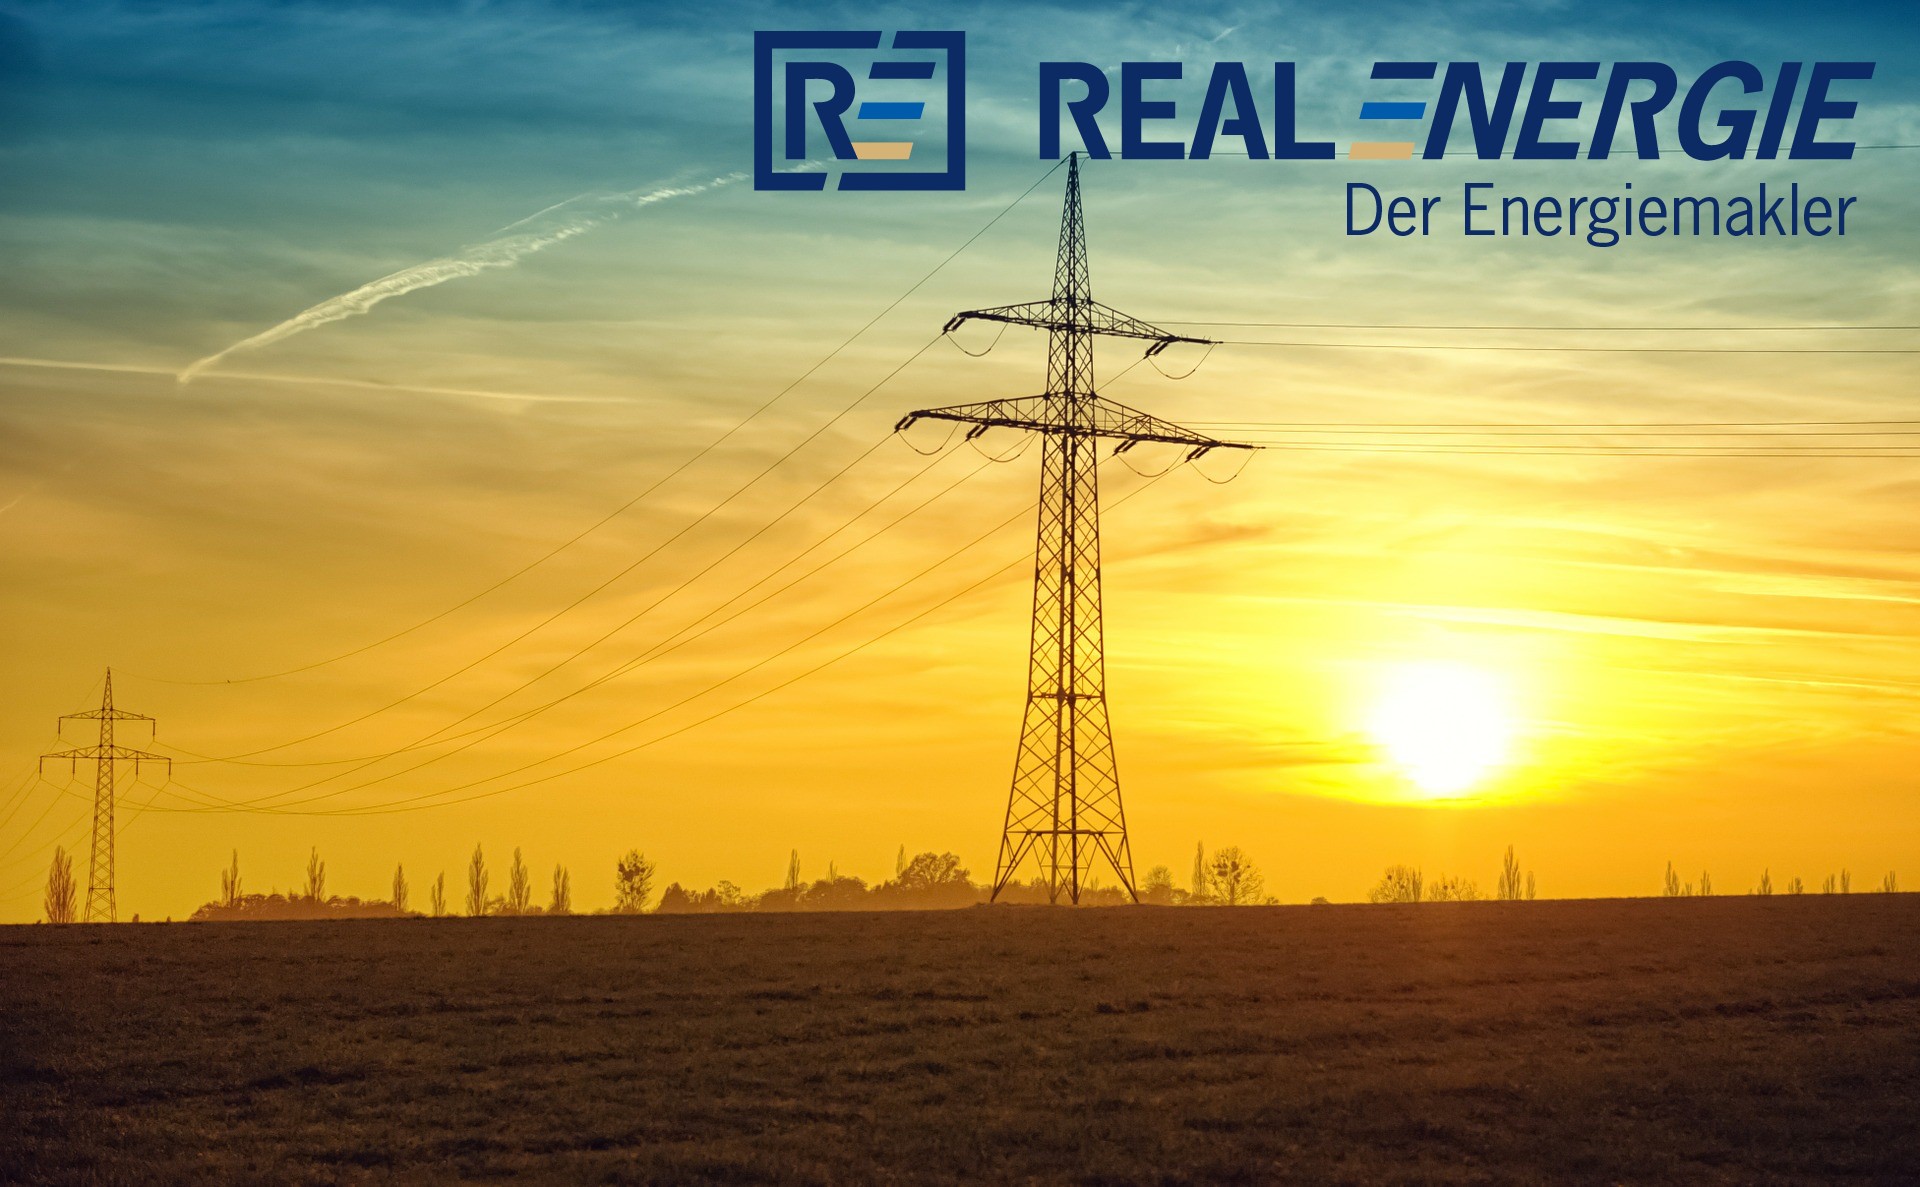 Als Energiemakler in Alzey und Umgebung vermitteln wir Strom- und Gasverträge für Kunden in Deutschland – individuell auf Ihren Bedarf zugeschnitten – sowie digitale, fernauslesbare Stromzähler mit Verbrauchsvisualisierung. Wir begleiten den gesamten Prozess des Energieeinkaufs von der Bestandsaufnahme bis zum Abschluss und darüber hinaus.

Energiemakler, strommakler, energieeinkauf, energiebeschaffung, strombeschaffung, gasbeschaffung, gaspreise, gaspreisentwicklung, gaspreisentwicklung 2022, gaspreisentwicklung bis 2025, günstiger gasanbieter, gasvergleich, gaspreisvergleich, gasanbieter wechseln, gas anbieter wechseln, gasanbieterwechsel, günstige strom und gas anbieter, strom und gasanbieter wechseln, strom und gaspreise, smartmeter, smart meter gateway, smart meter kaufen, messstellenbetreibers, messstellenbetrieb, wettbewerblicher messstellenbetreiber, messstellenbetreiber strom, energieeinkauf, energiebeschaffung, strombeschaffung, gasbeschaffung, Energieberatung, Energieoptimierung, Energieeinkauf für Geschäftskunden, Energieeinkauf für Unternehmen, Energieeinkauf B2B, Energieeinkauf Immobilienverwalter